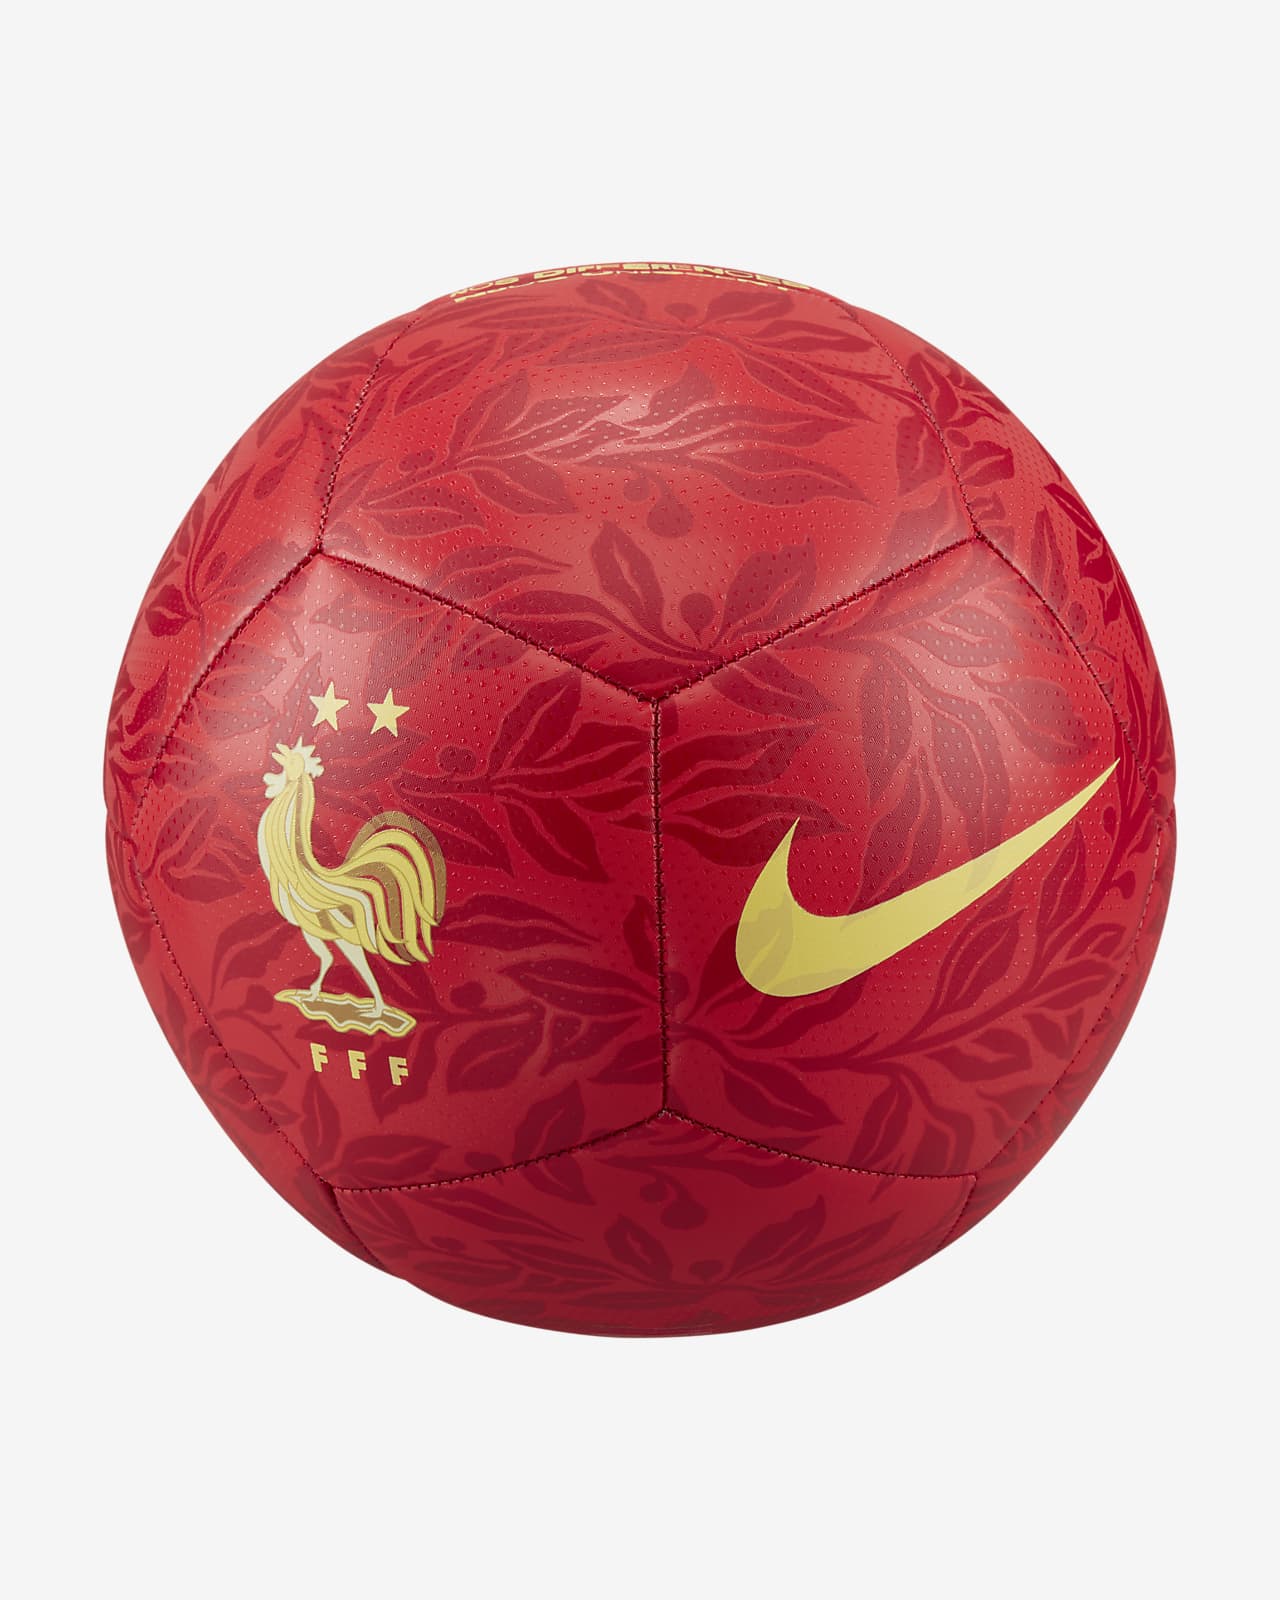 Descarga Patrocinar Estallar Francia Pitch Balón de fútbol. Nike ES